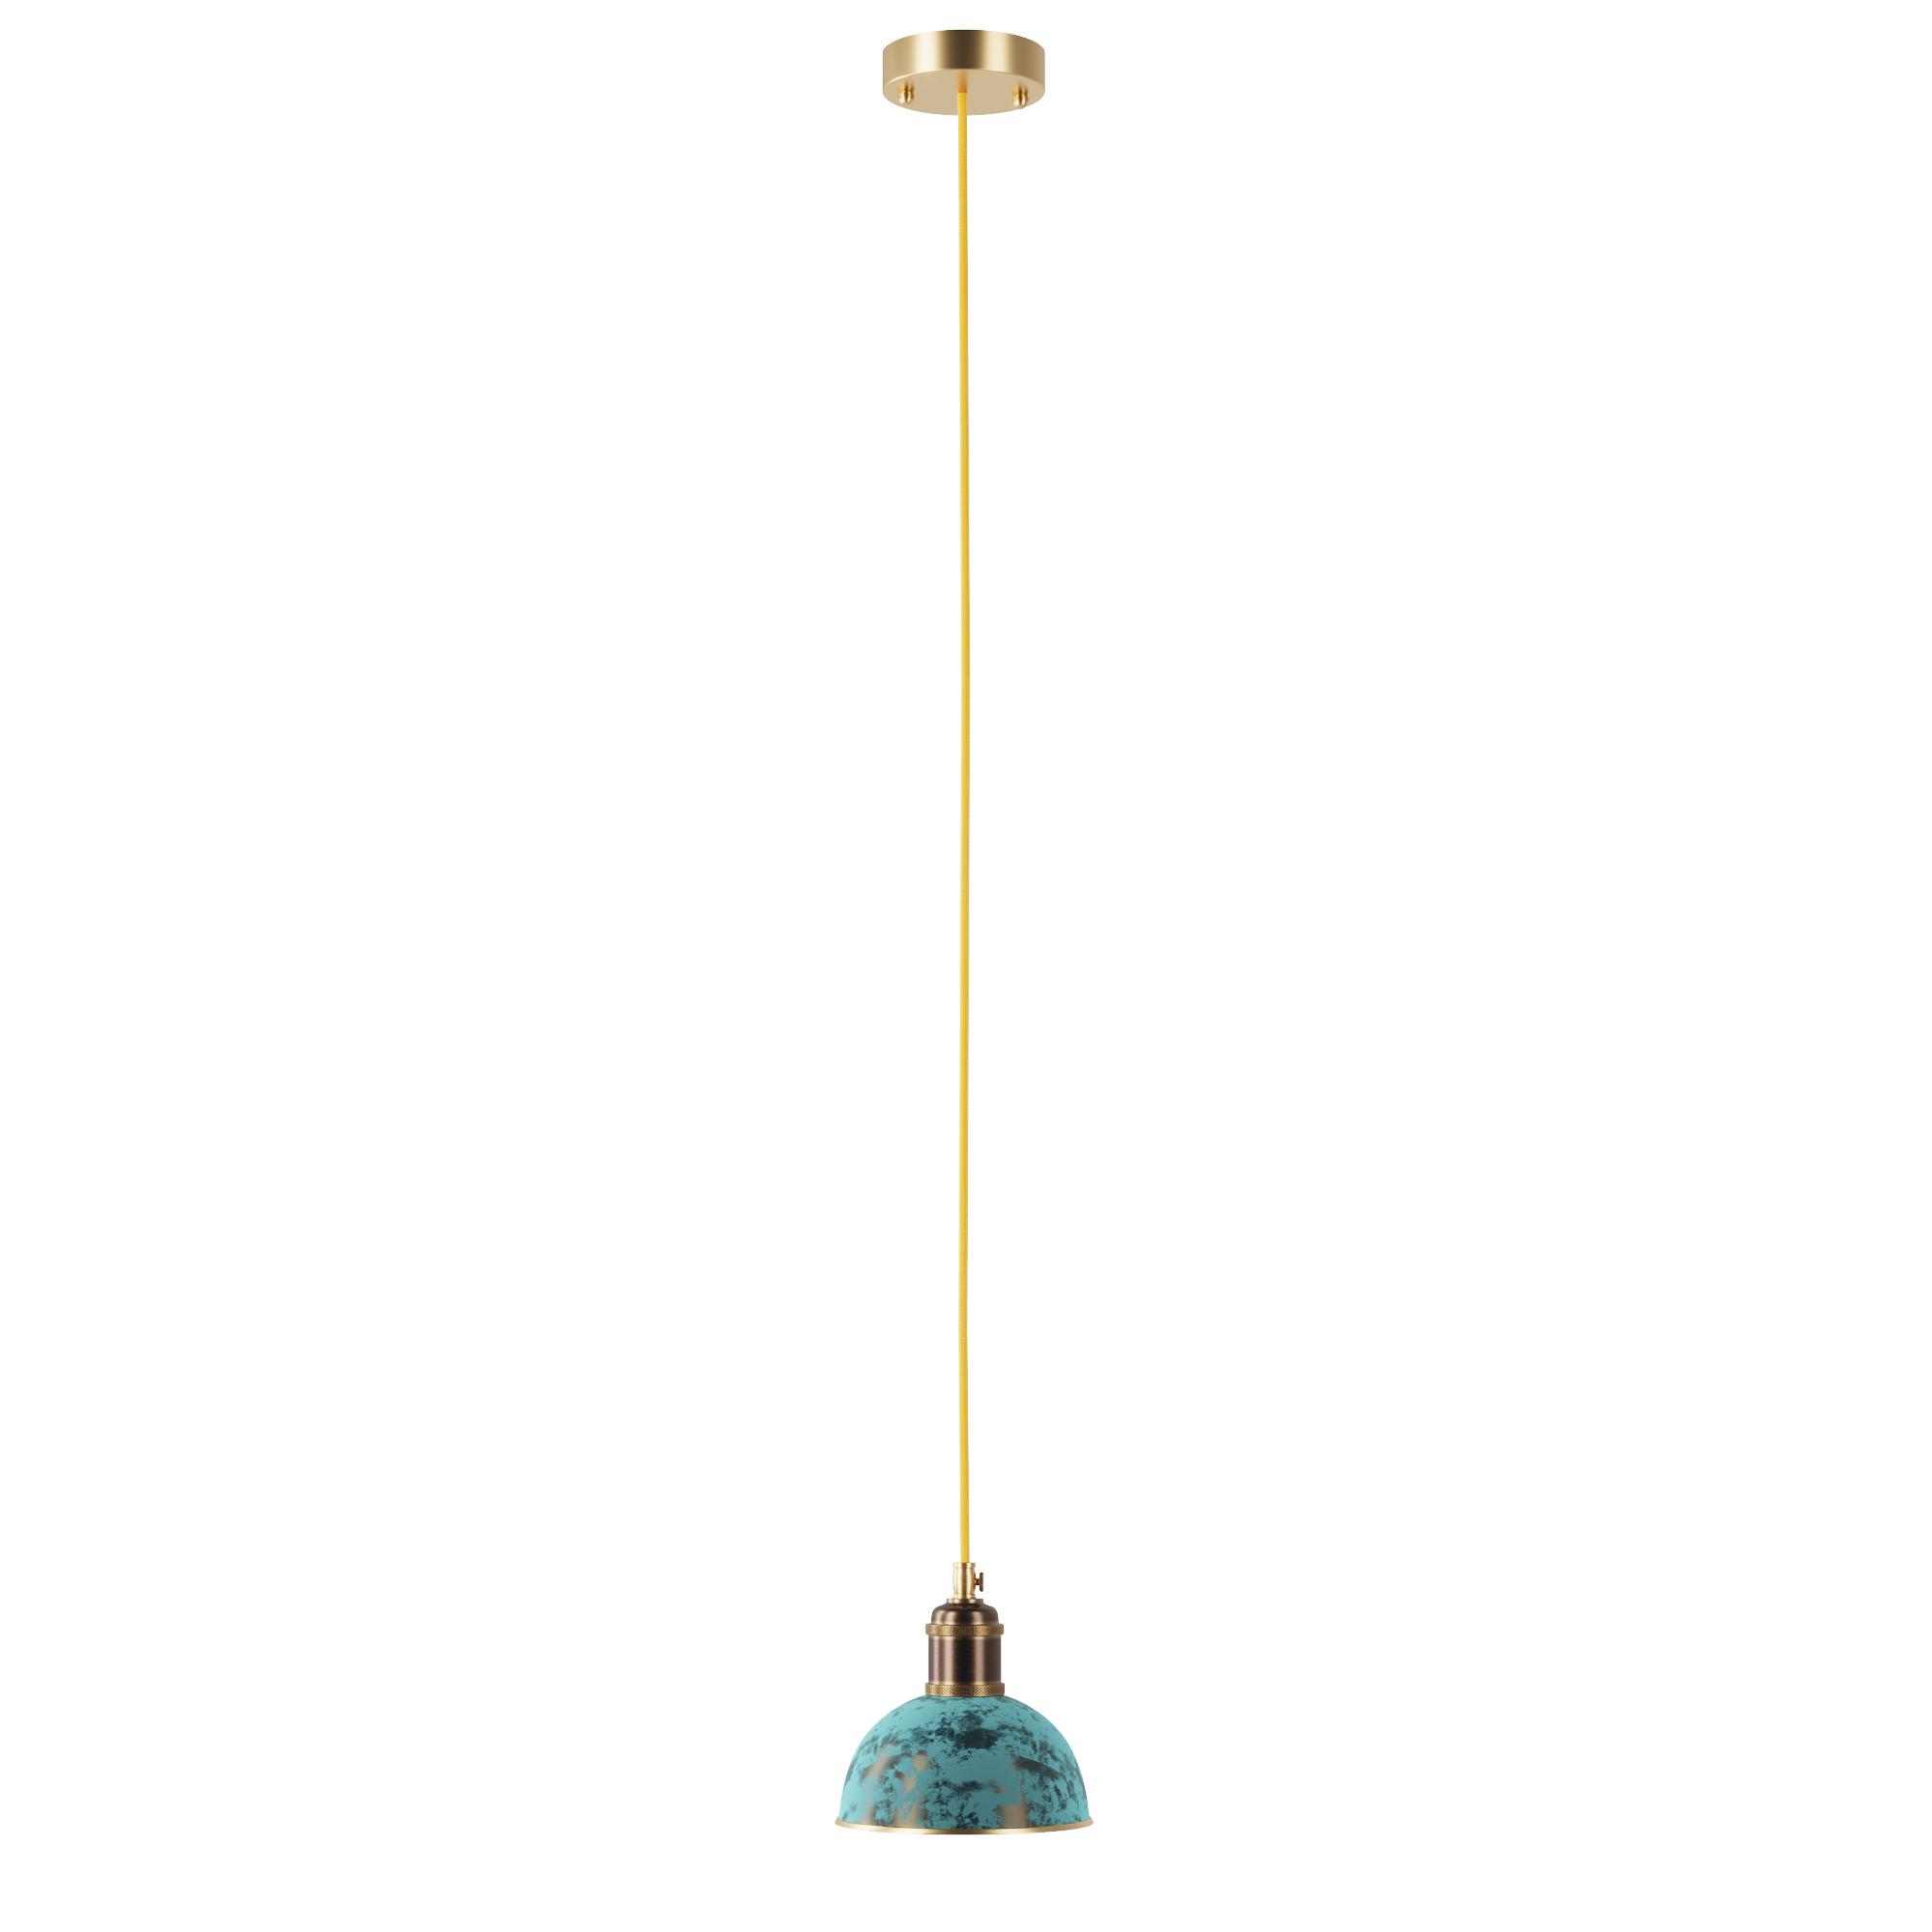 Small lamp, SKU. 3292 by Pikartlights 3d model